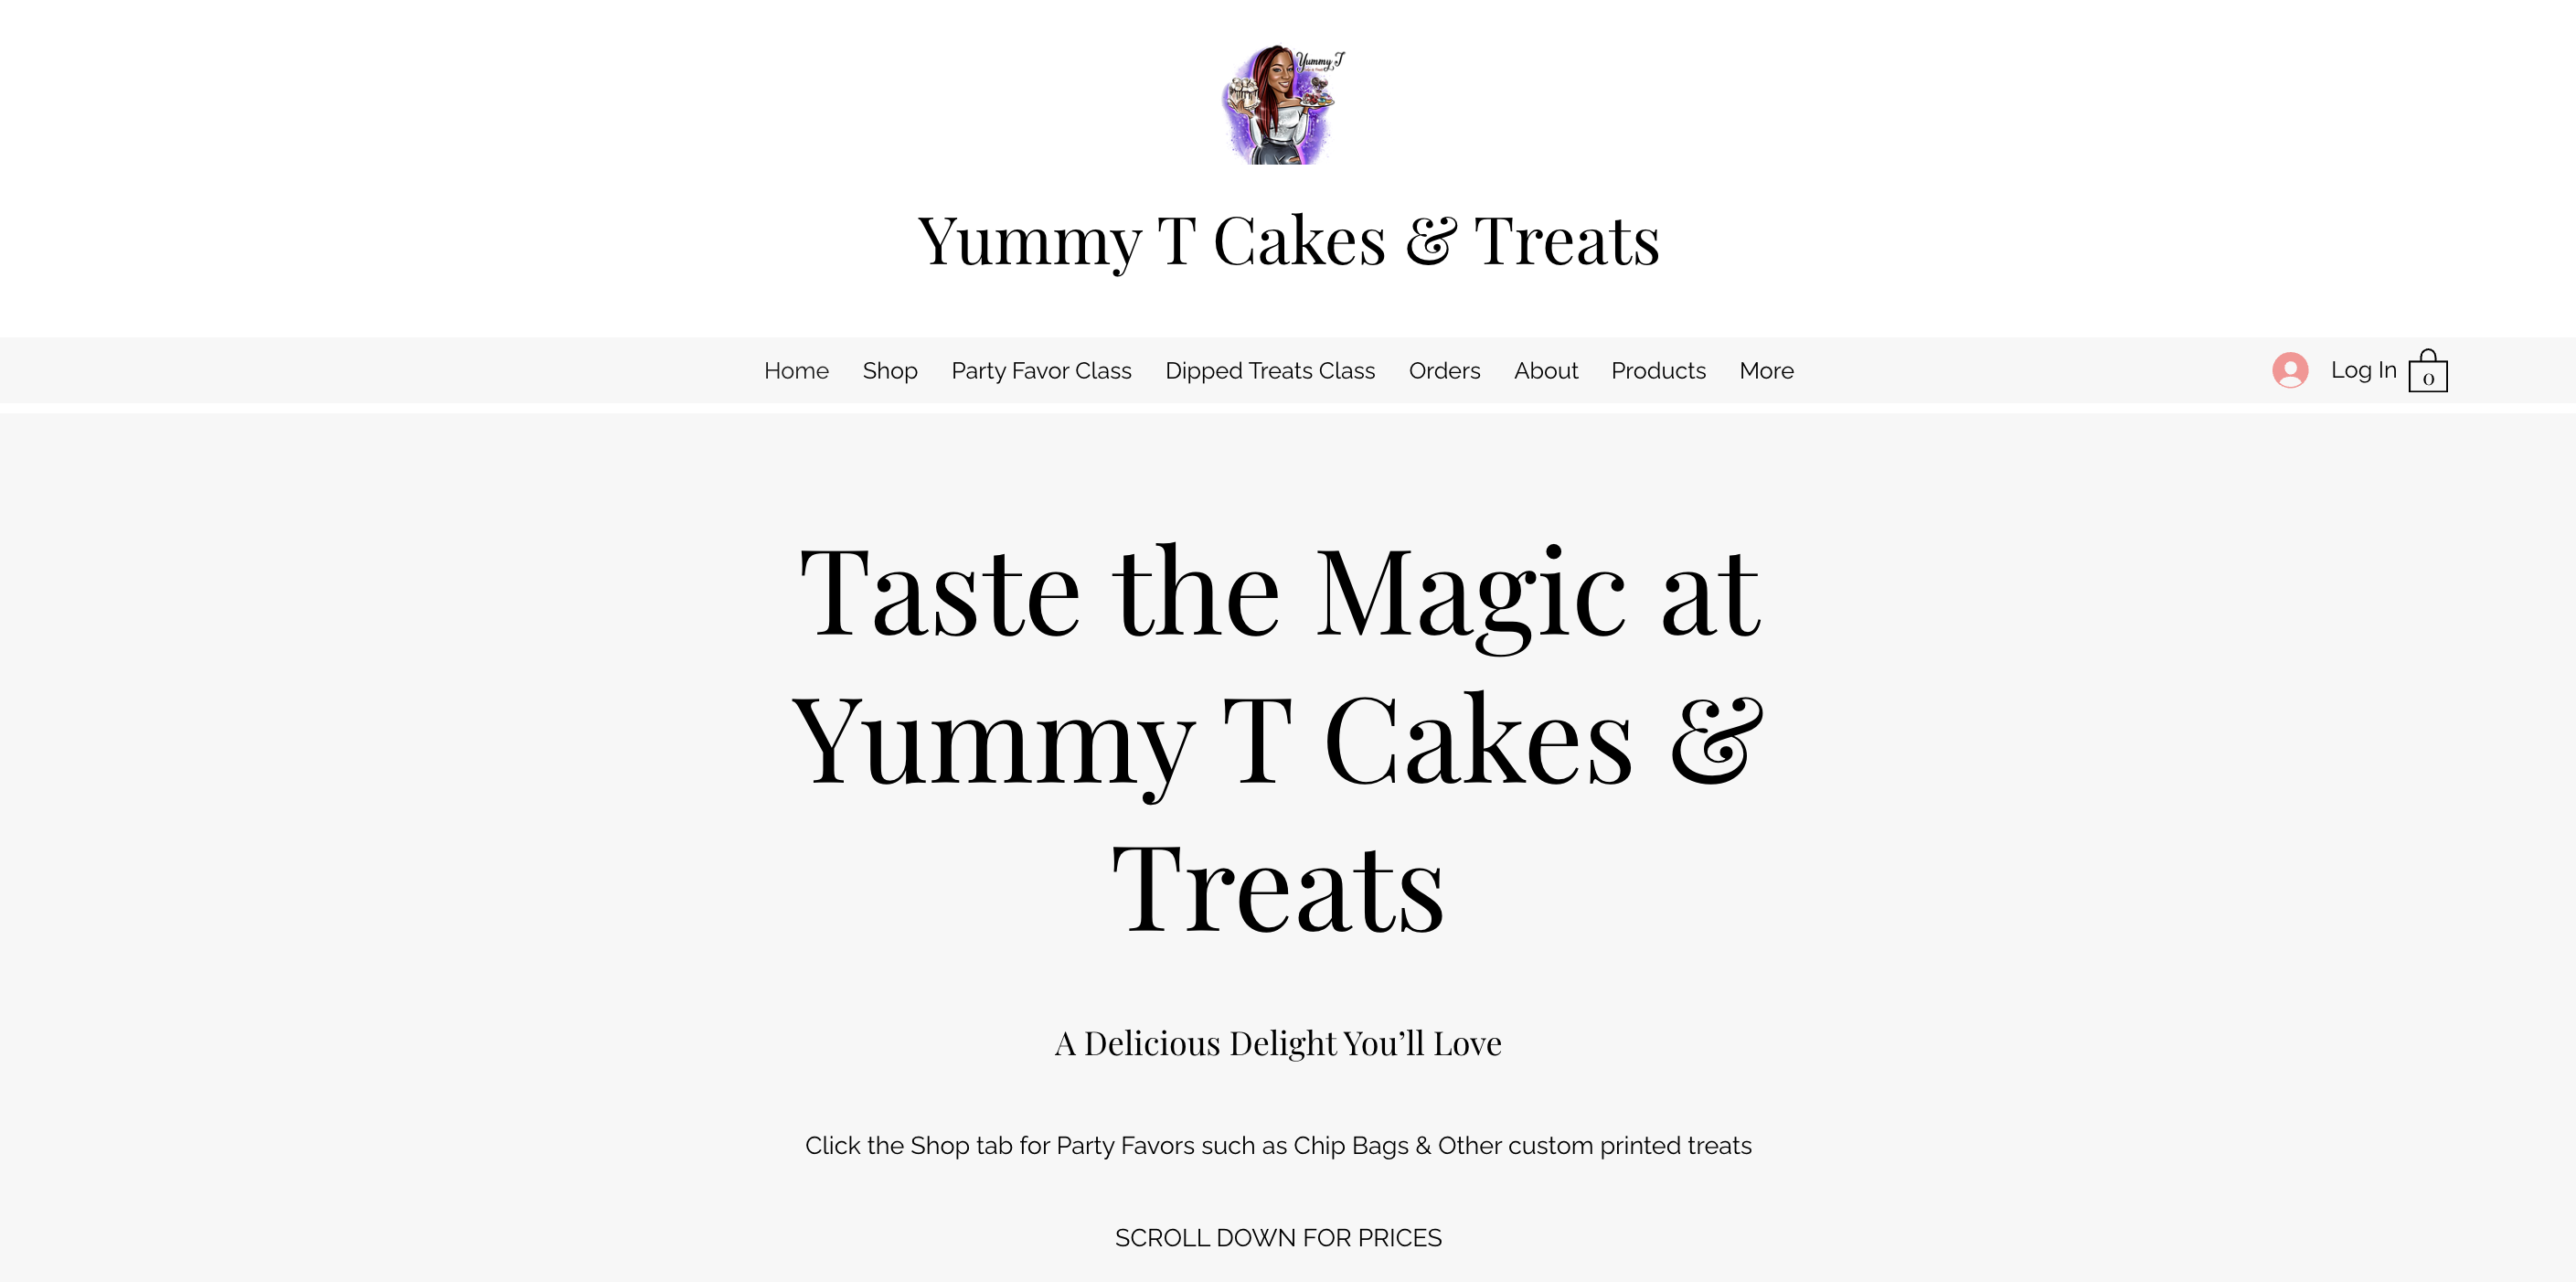 Yummy T Cakes & Treats